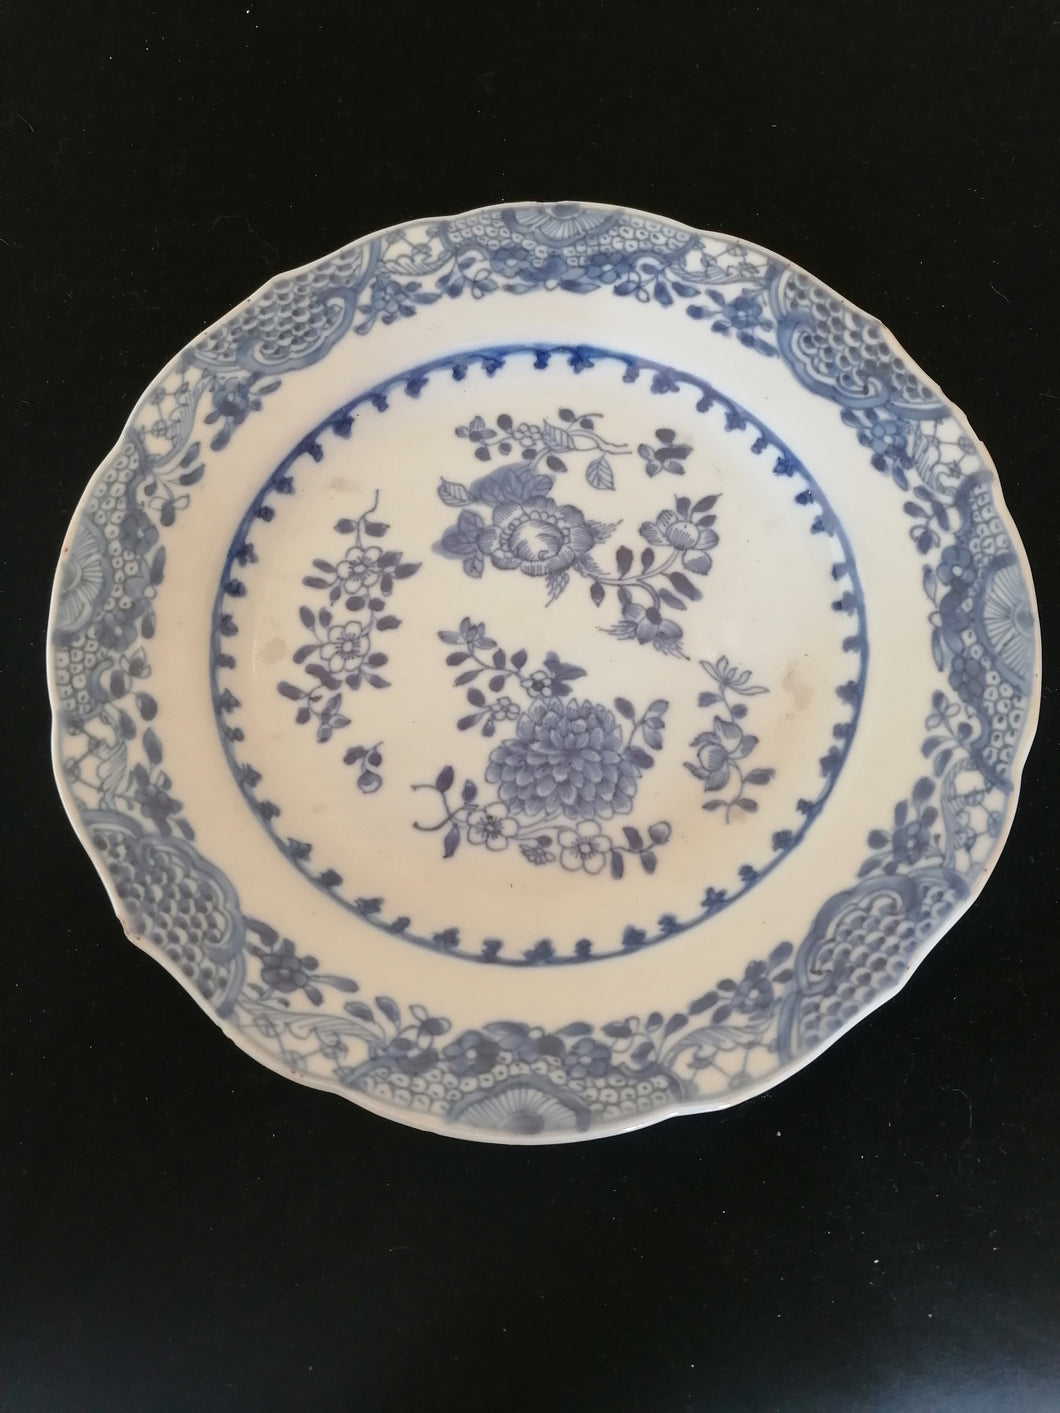 Assiette Chinoise XIXème décors bleu.